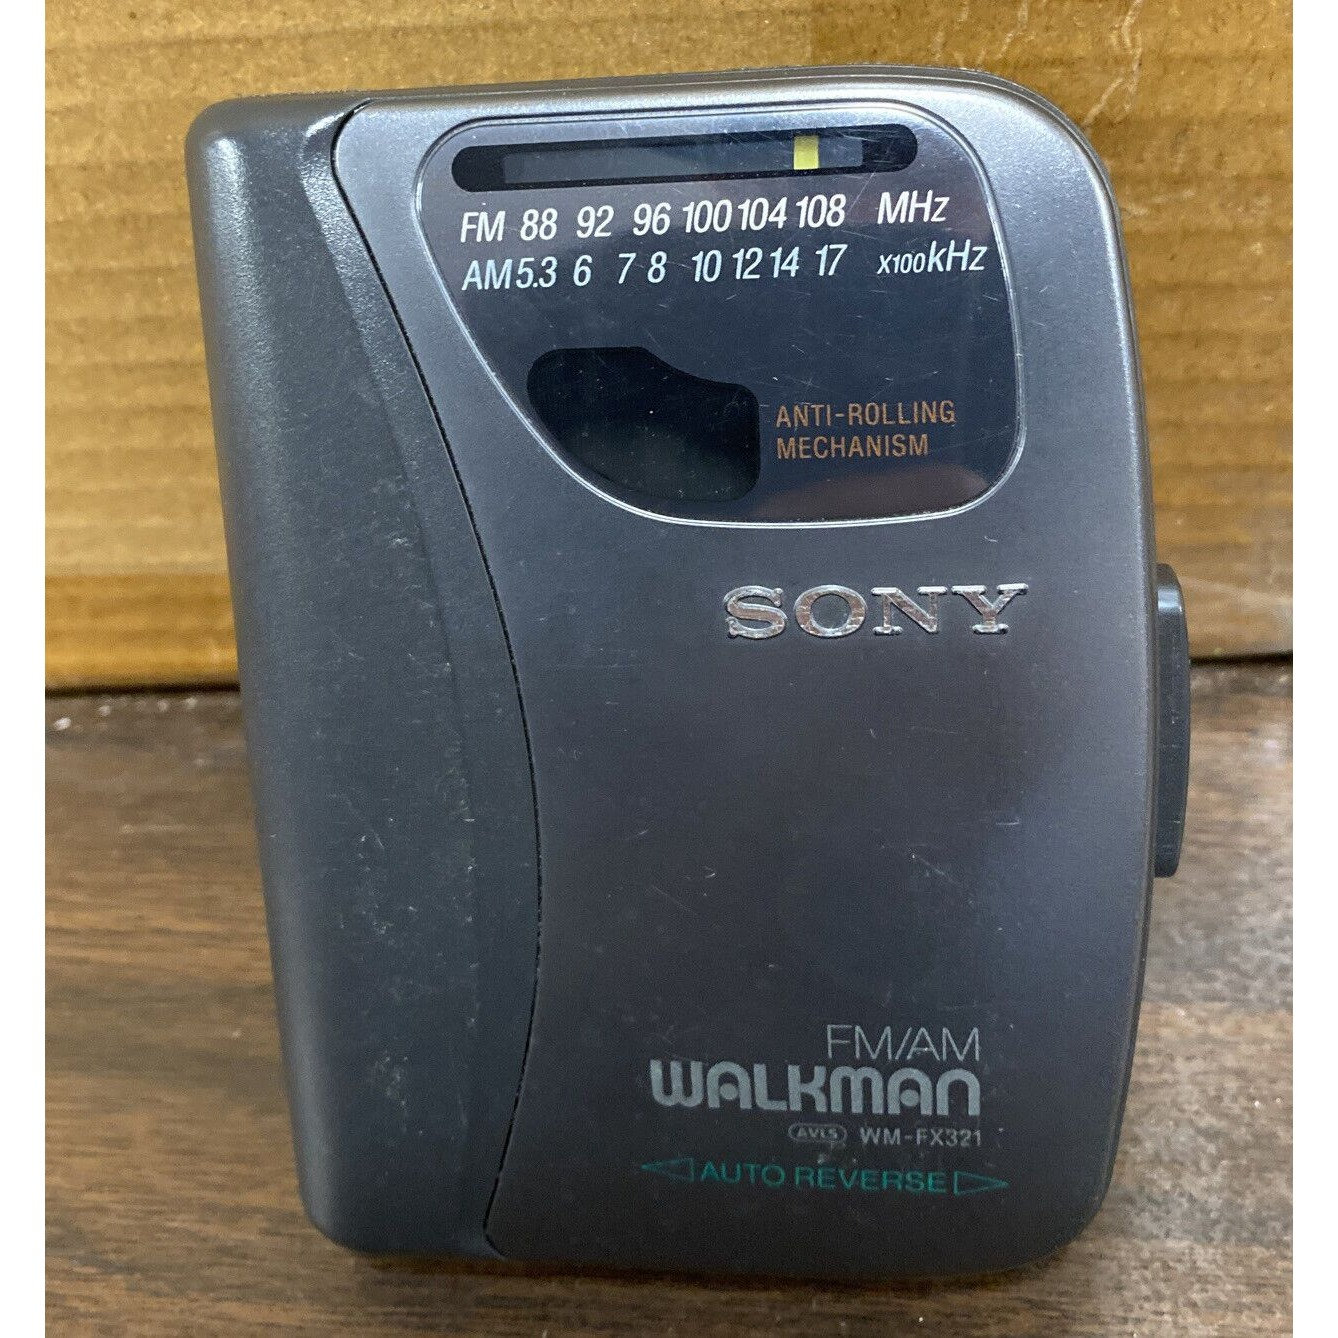 Sony - WM-F5 - FM/AM - Sports - Walkman - Catawiki